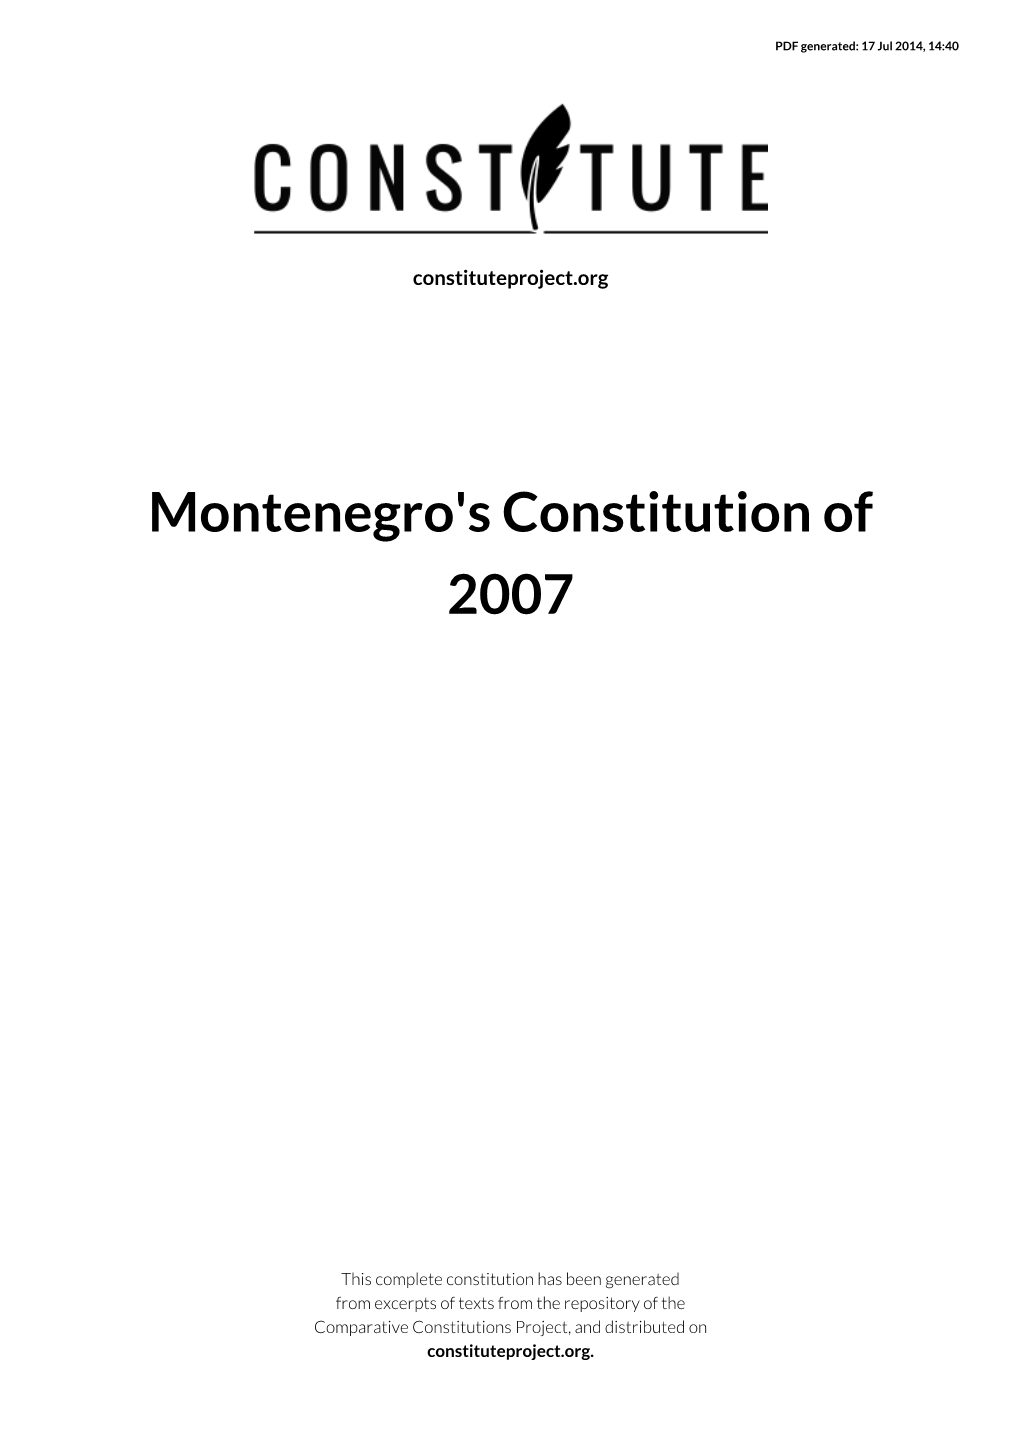 Montenegro's Constitution of 2007